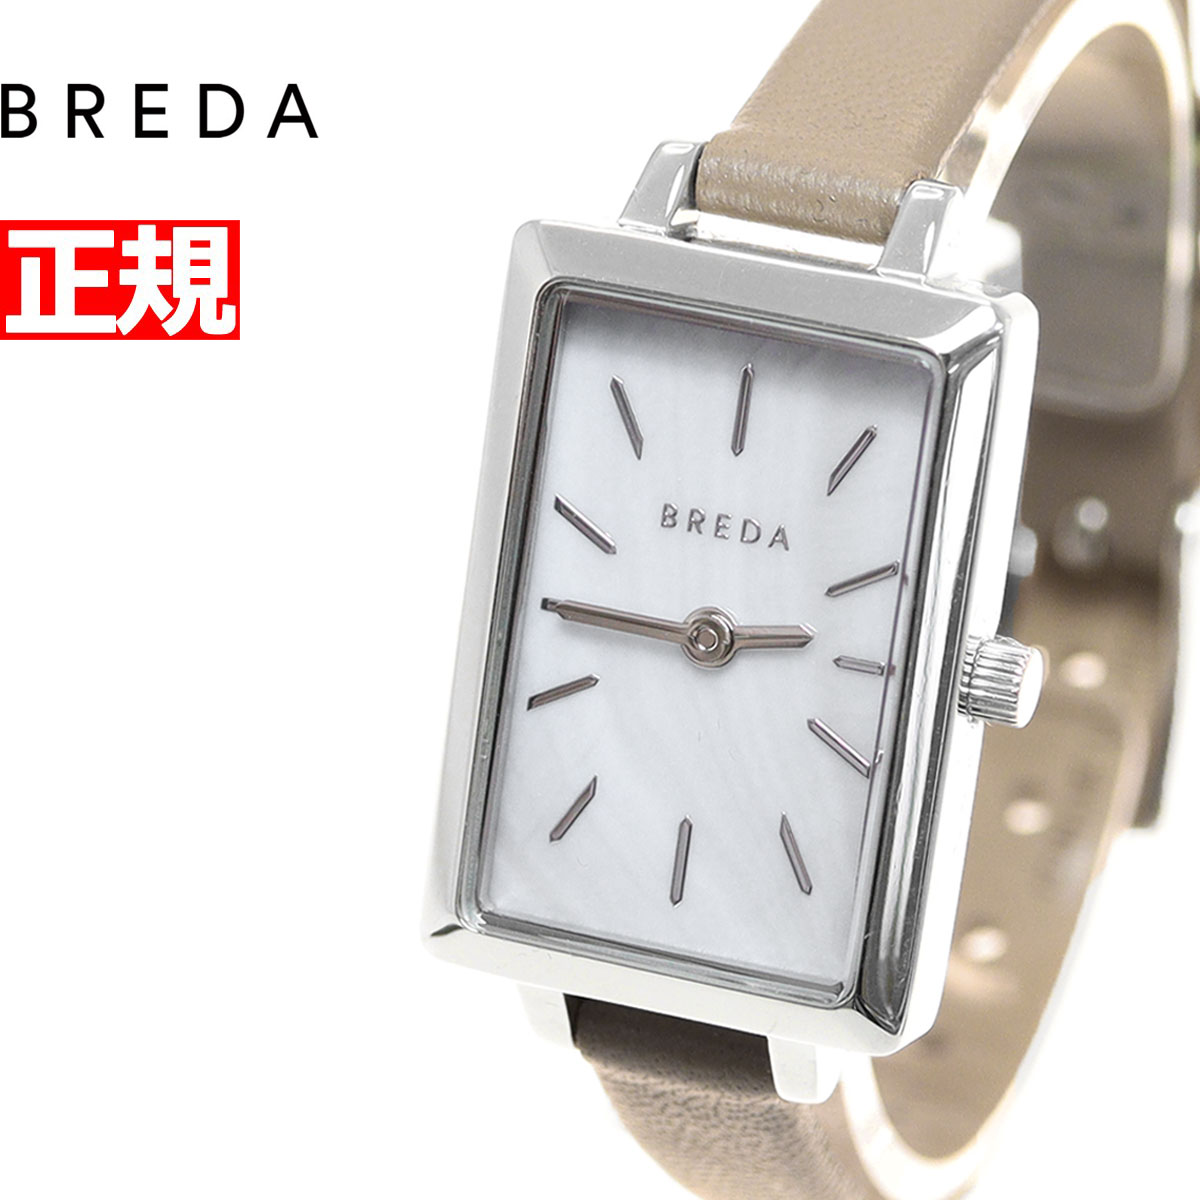 ブレダ BREDA 日本限定モデル 腕時計 レディース エヴァ EVA 1738k